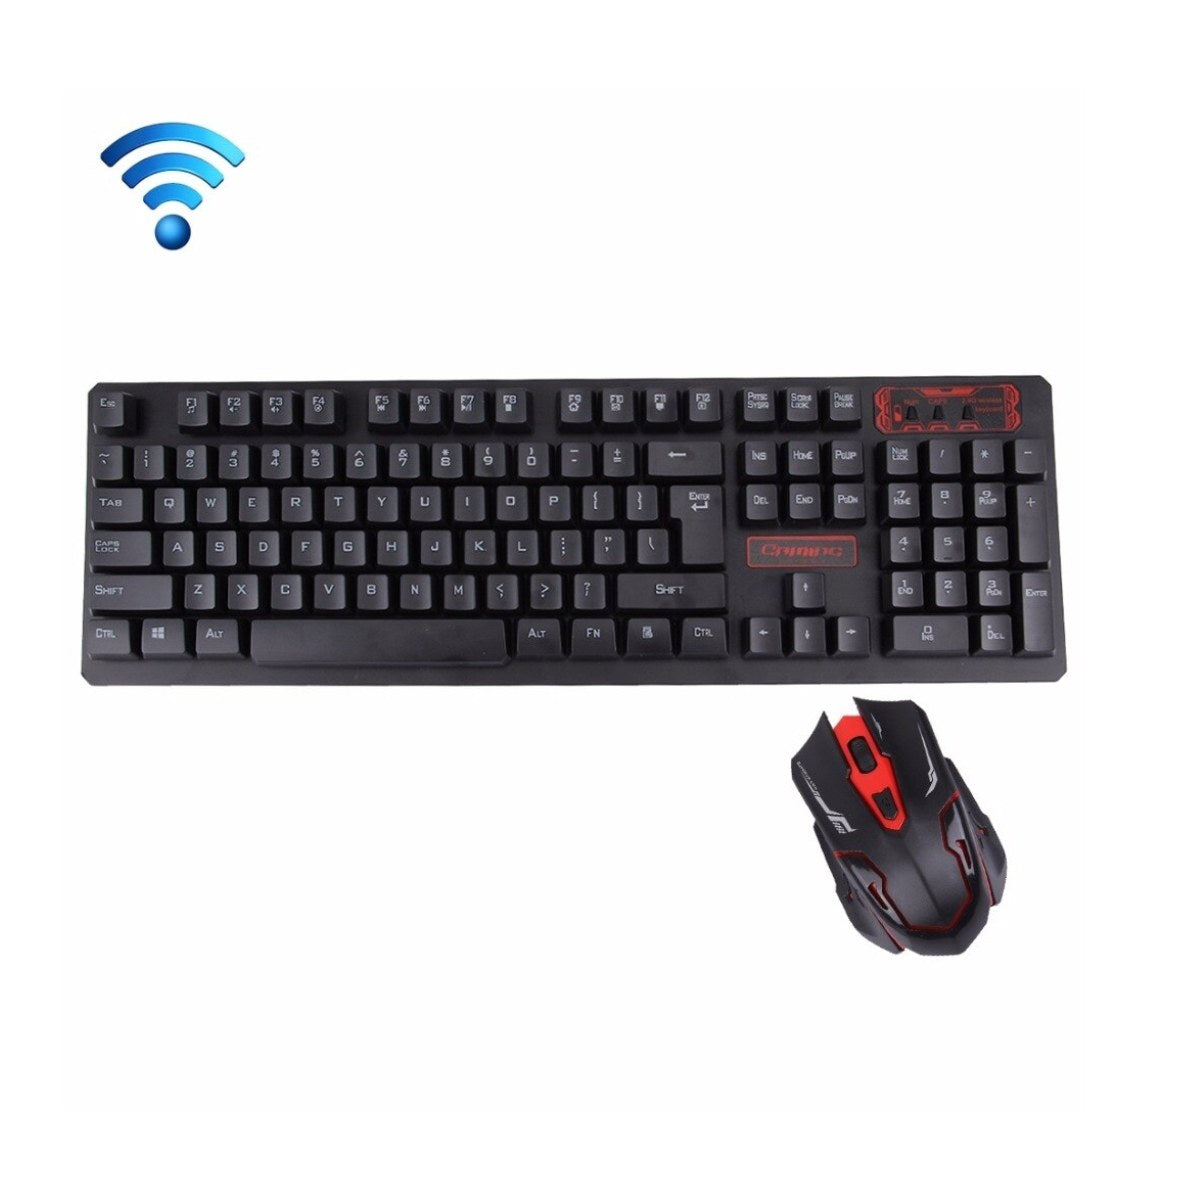 Novo HK6500 keyboard & mouse | كيبورد وماوس لاسلكي